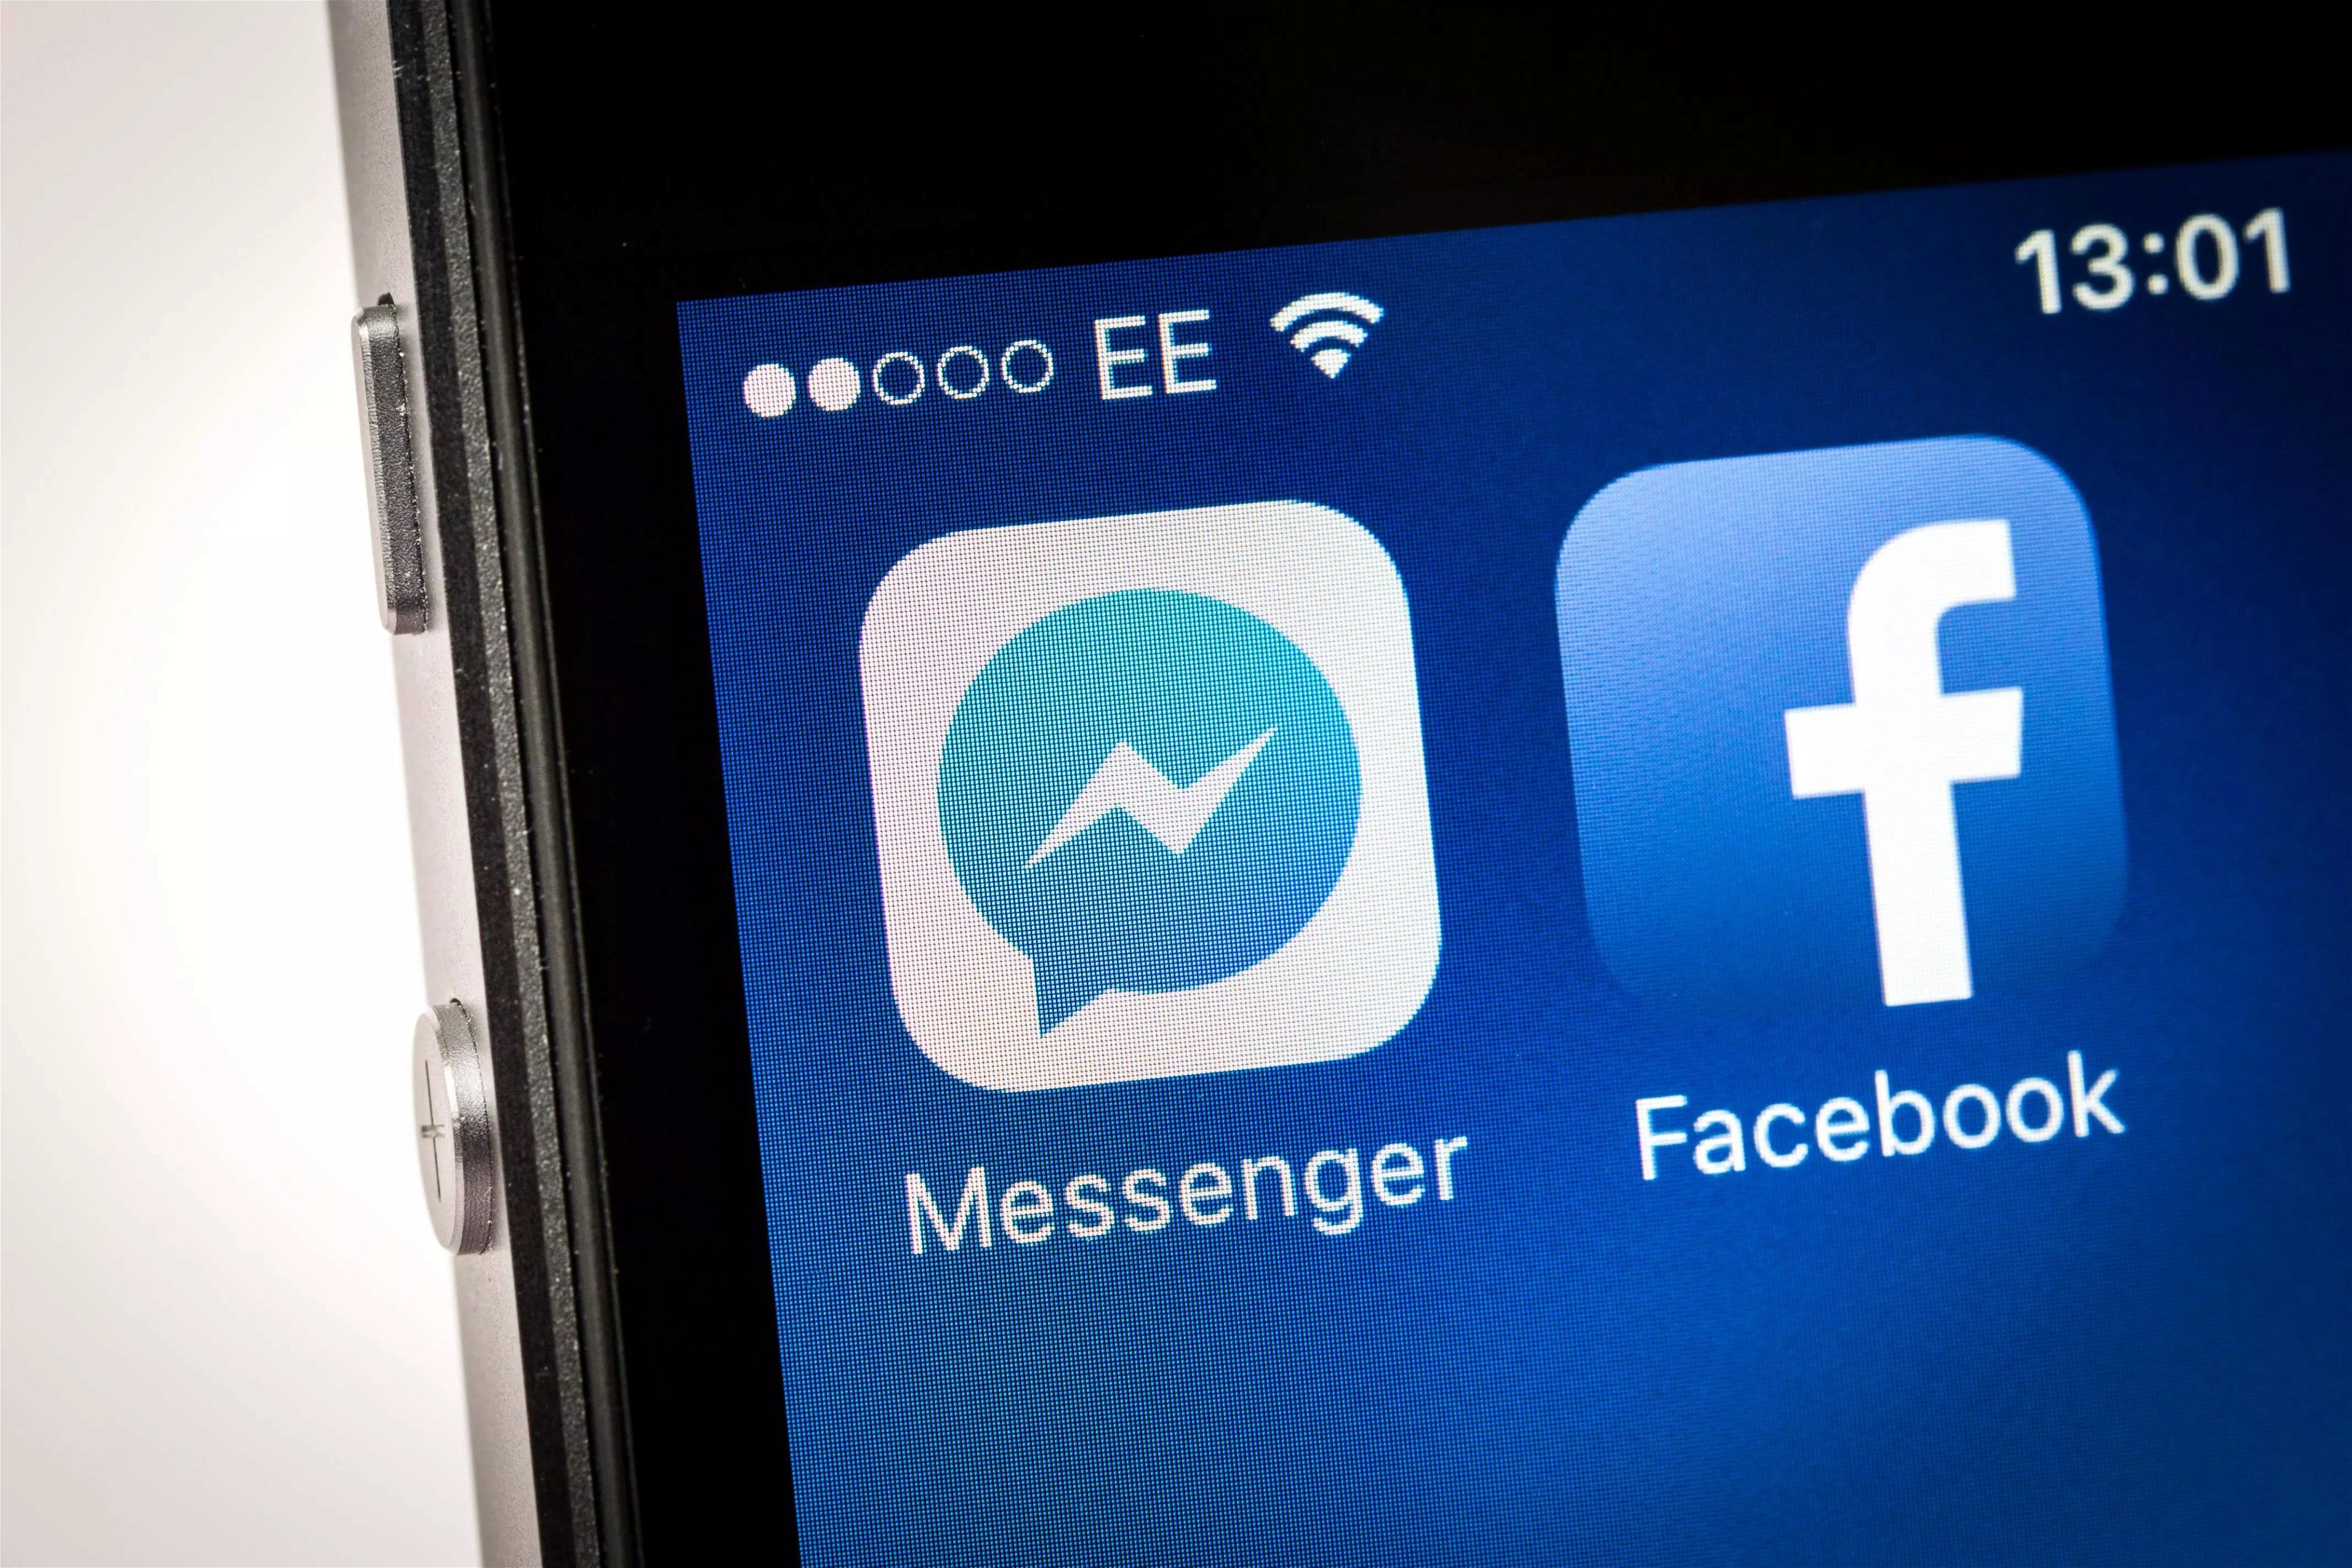 Facebook e messenger aplicações no iOS